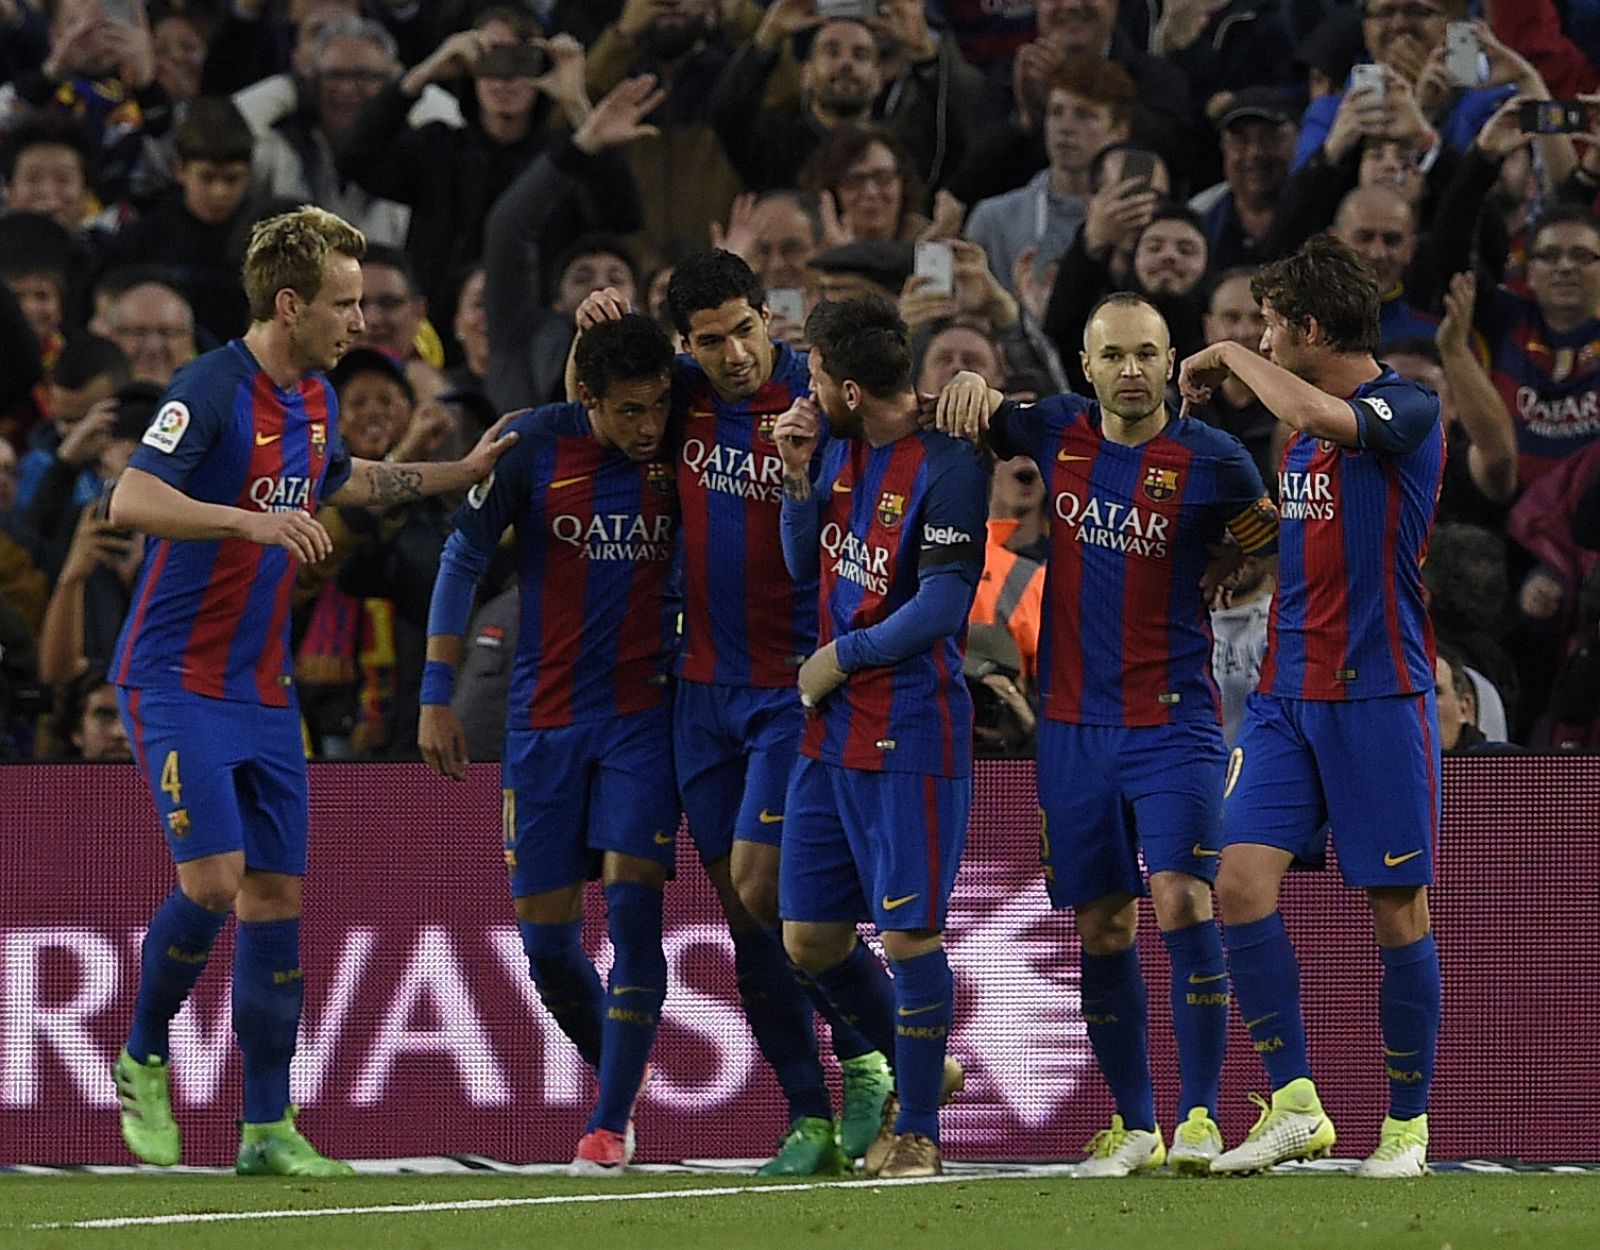 Los jugadors del Barça celebran el primer gol logrado ante el Sevilla, obra de Suárez.